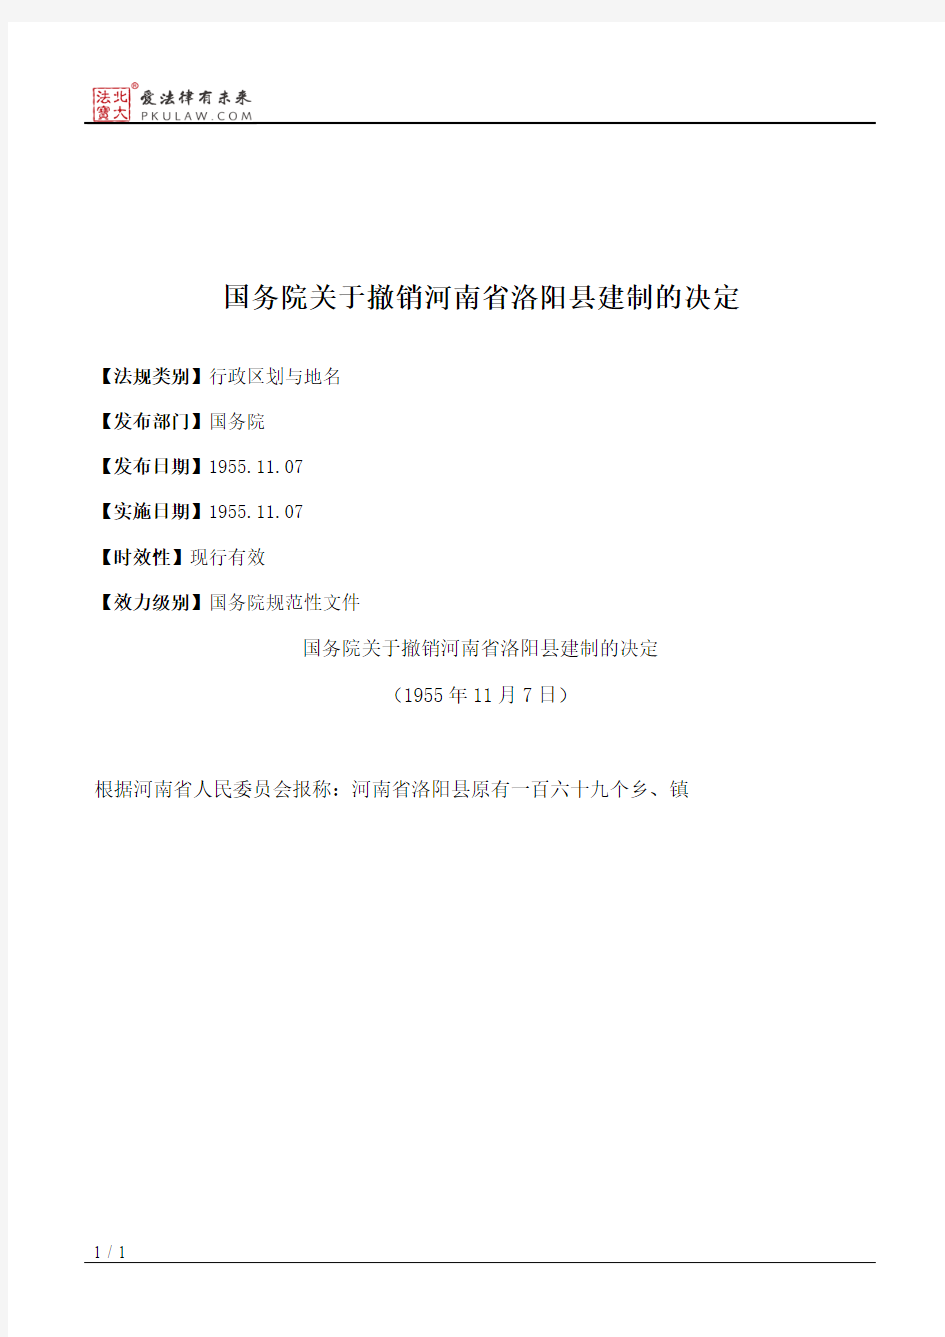 国务院关于撤销河南省洛阳县建制的决定